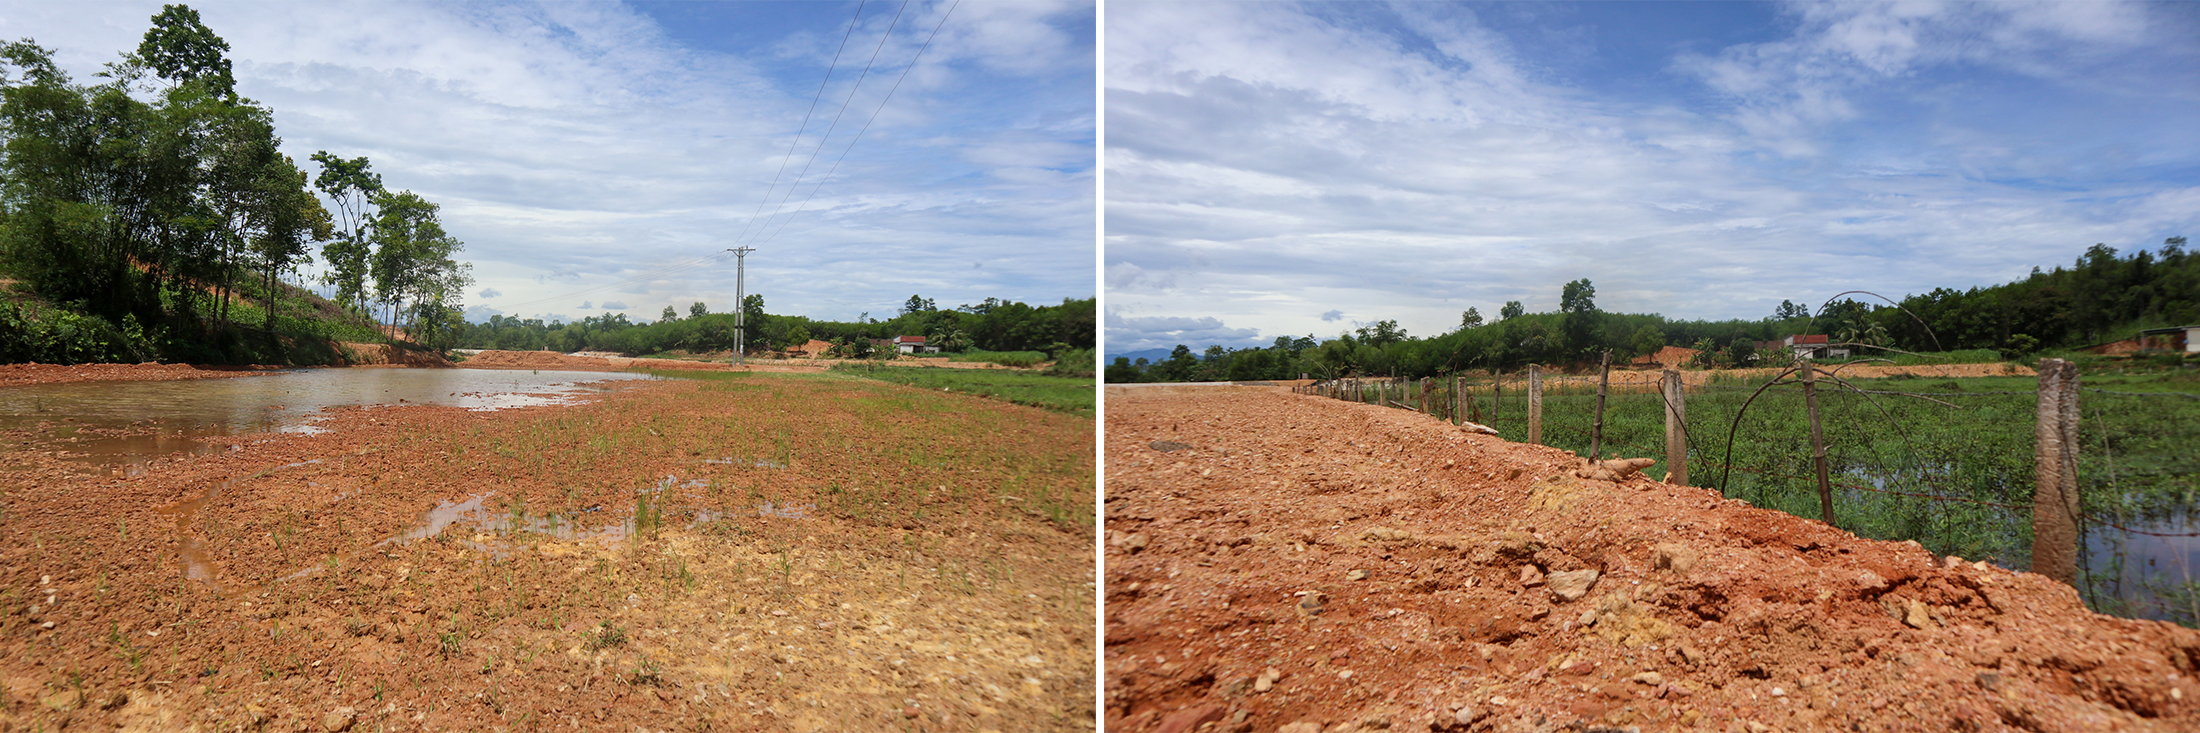 Để cải tạo ruộng đất sau chuyển đổi, có những hộ dân ở Bình Sơn (Anh Sơn) phải bỏ ra gần trăm triệu đồng san ủi, nâng mặt bằng. Ảnh: T.P